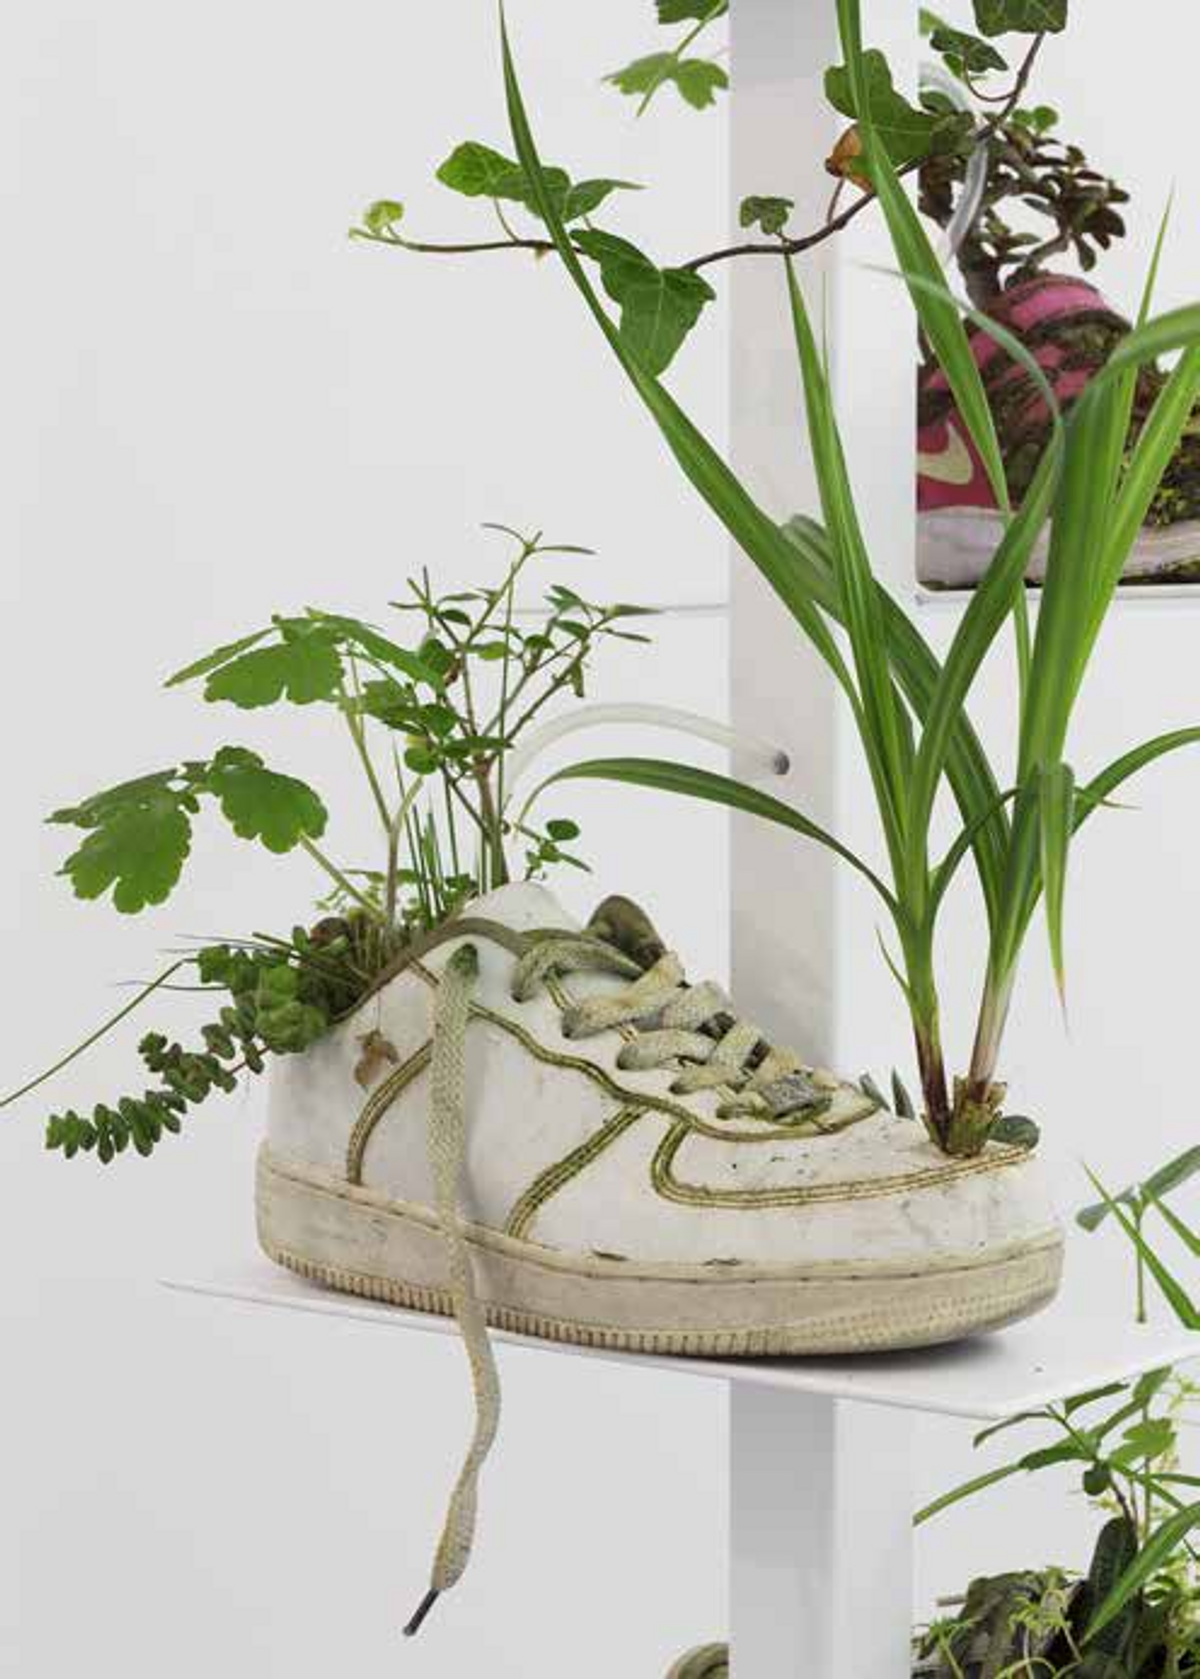 Michel Blazy, Pull Over Time : Running, 2017 / Running Shanghai, 2019, chaussures de sport, plantes, sol, eau, techniques mixtes, 190 x 50 x 50 cm. © Claire Dorn. Courtesy de l’artiste et Art : Concept, Paris